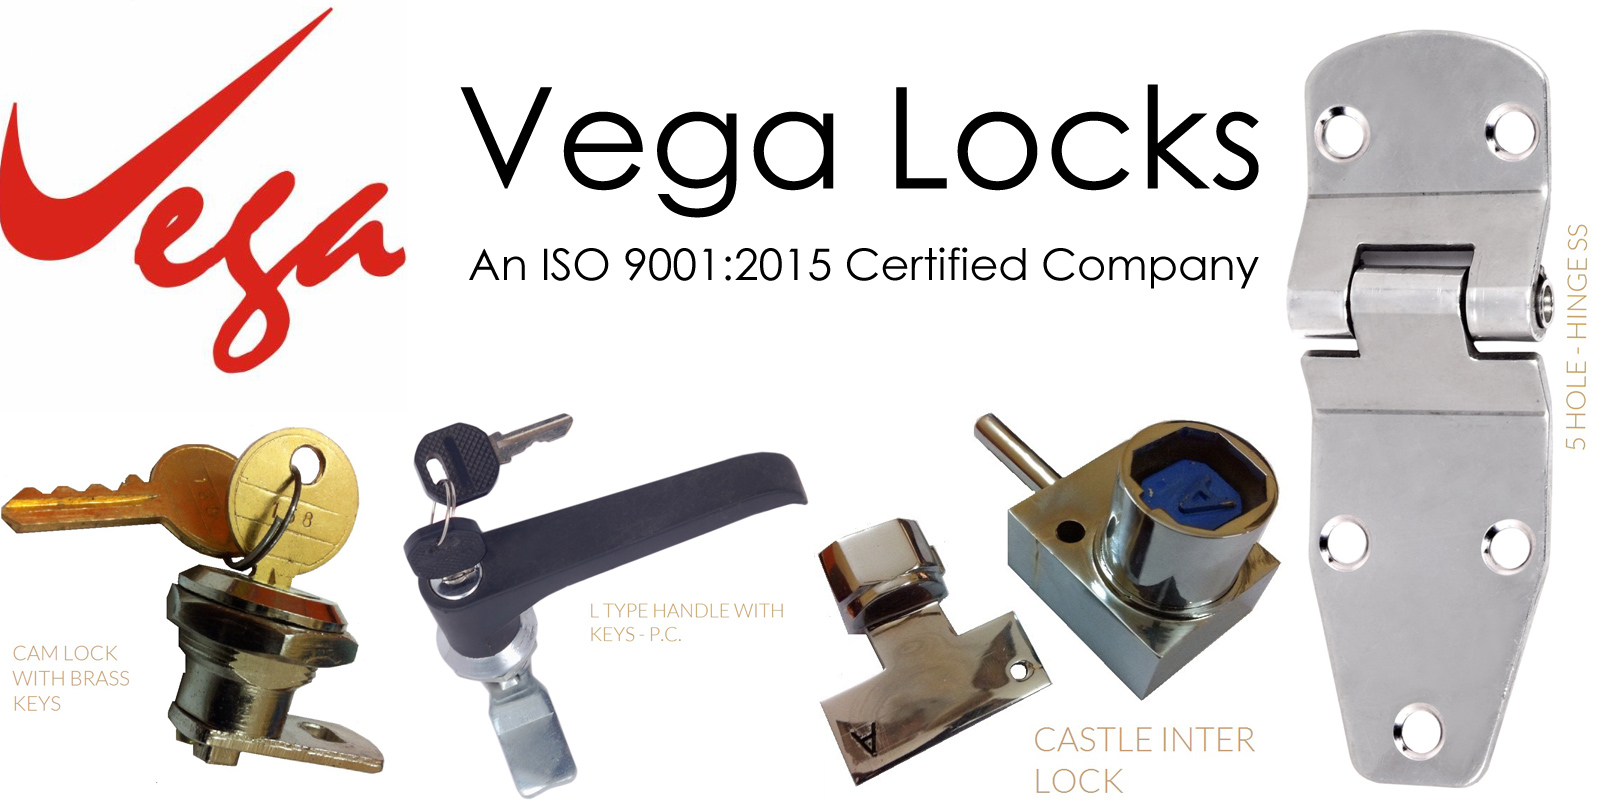 vega-locks-header-1